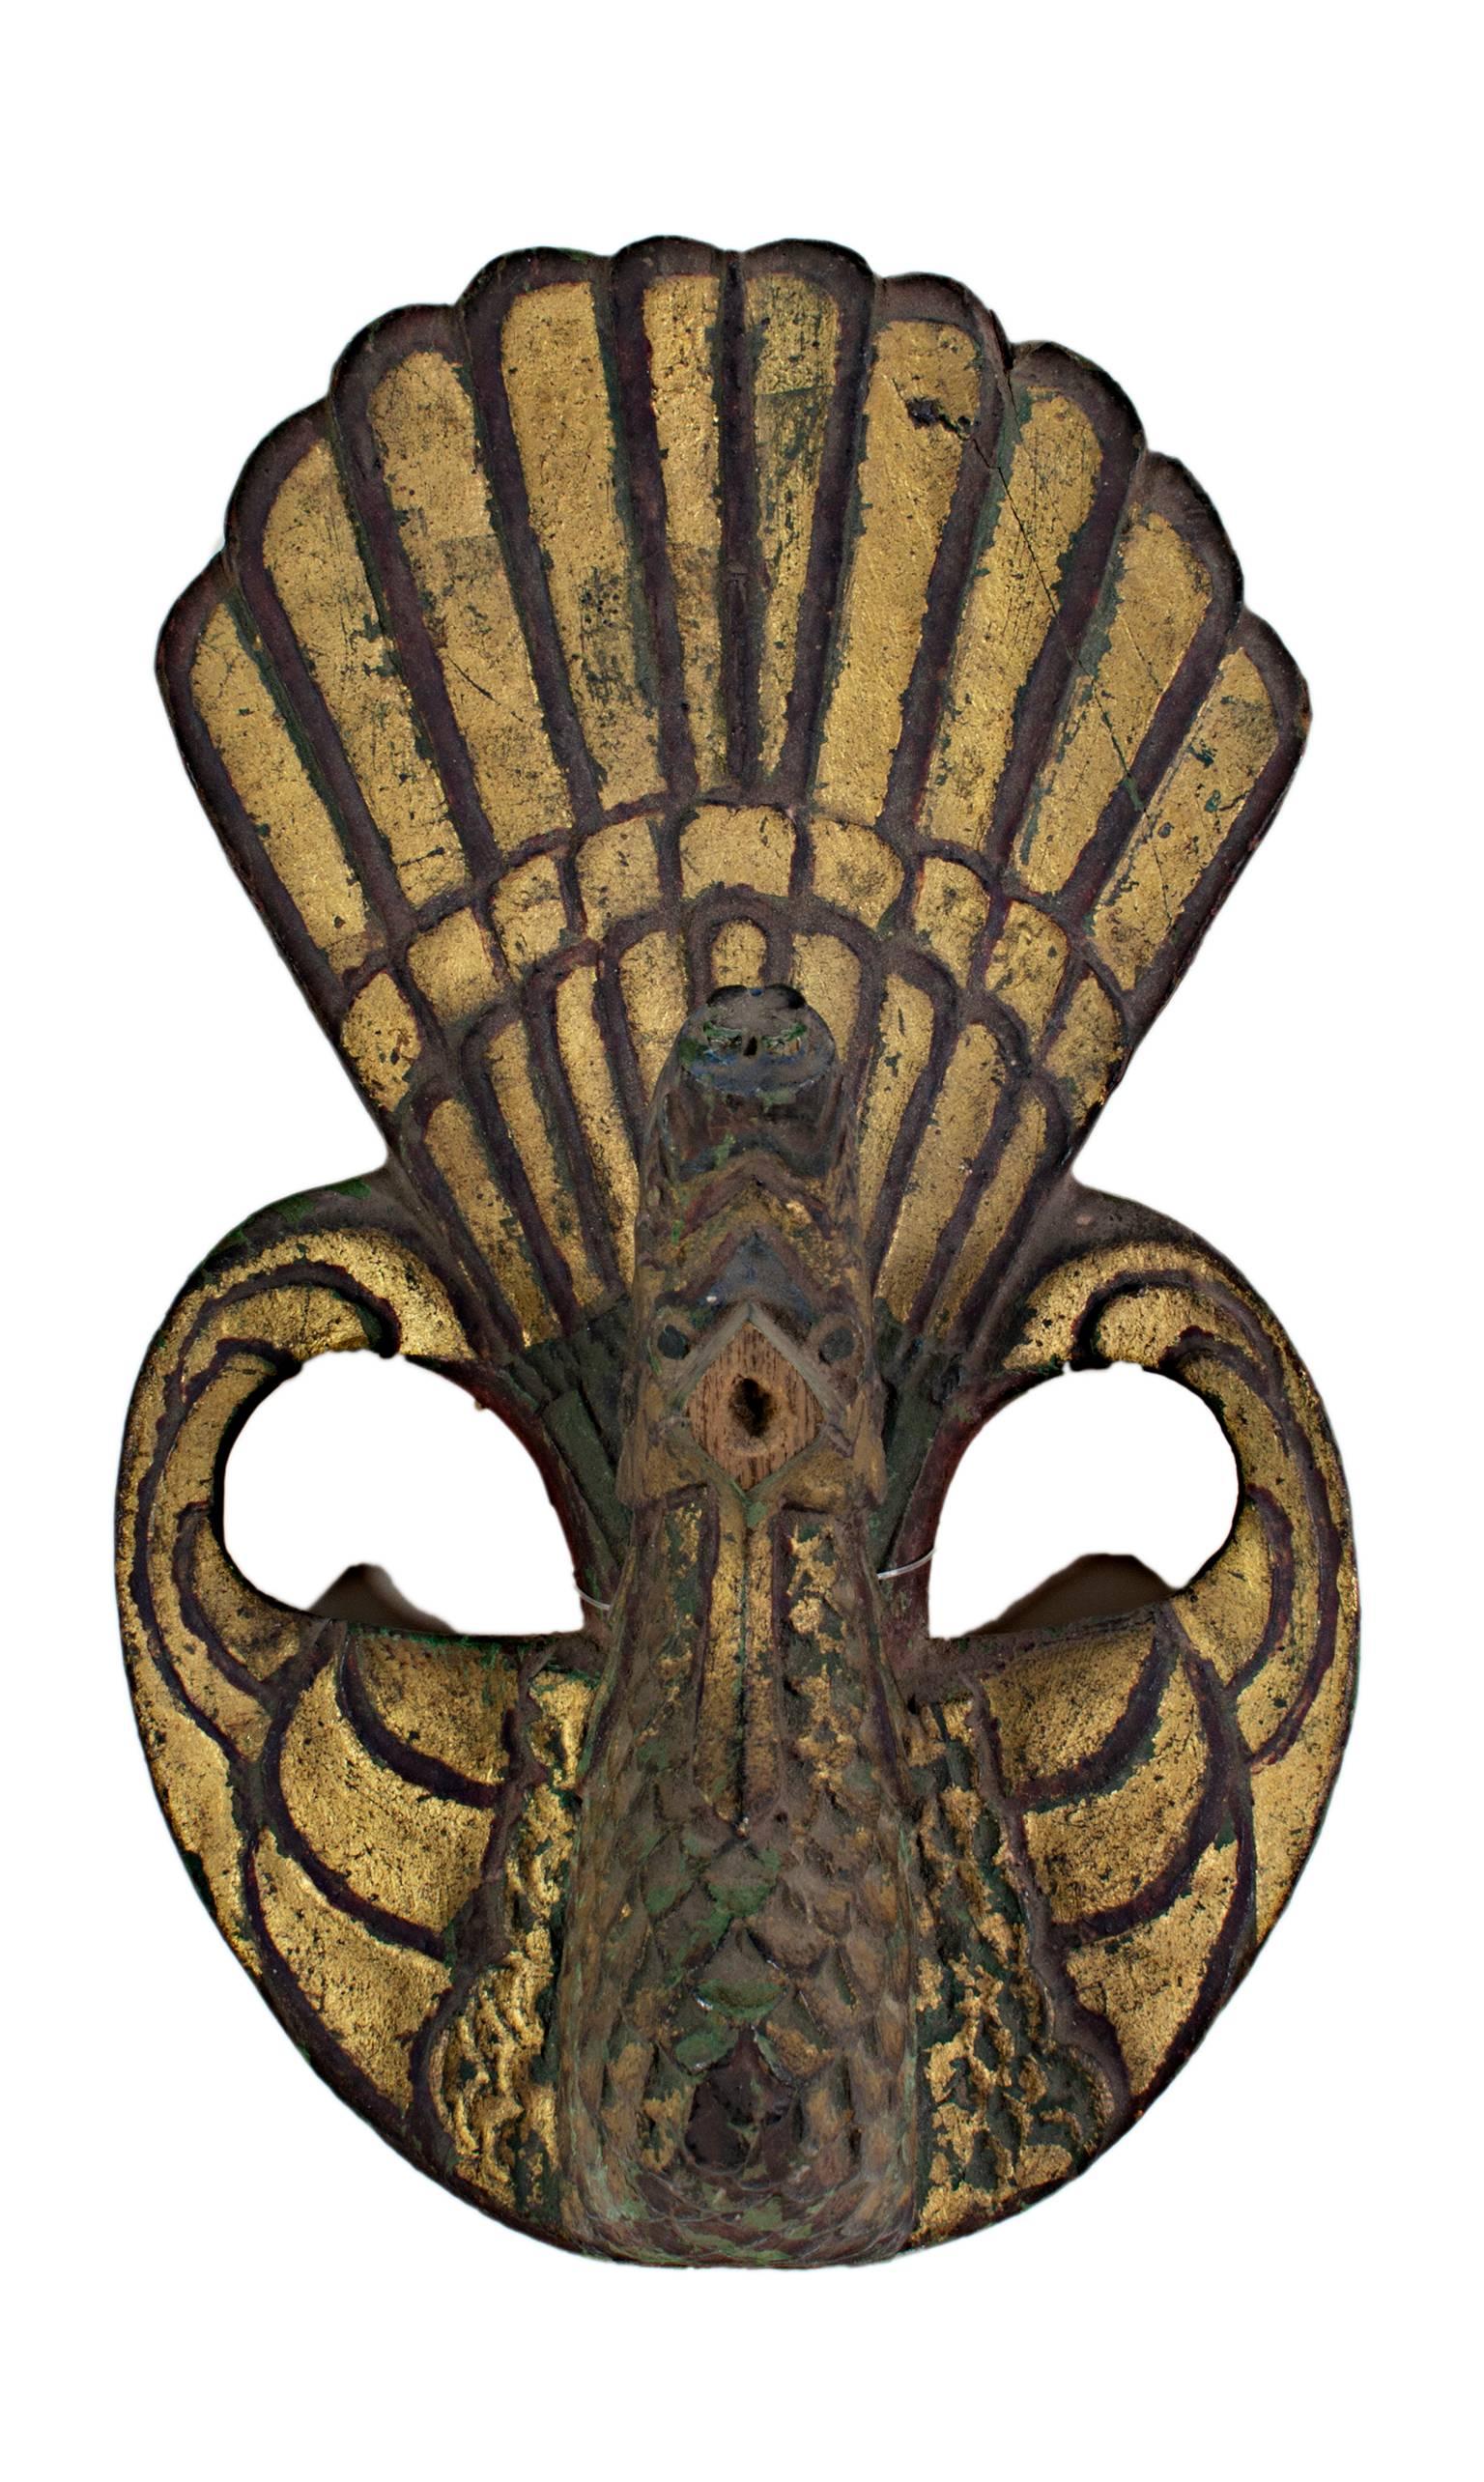 Cette sculpture en bois d'un oiseau ressemblant à un paon (Garuda) a été créée par un artiste indonésien inconnu. Le bec est manquant. La sculpture mesure 7 1/2" x 4 1/2".

Le Garuda est un oiseau légendaire ou une créature ressemblant à un oiseau